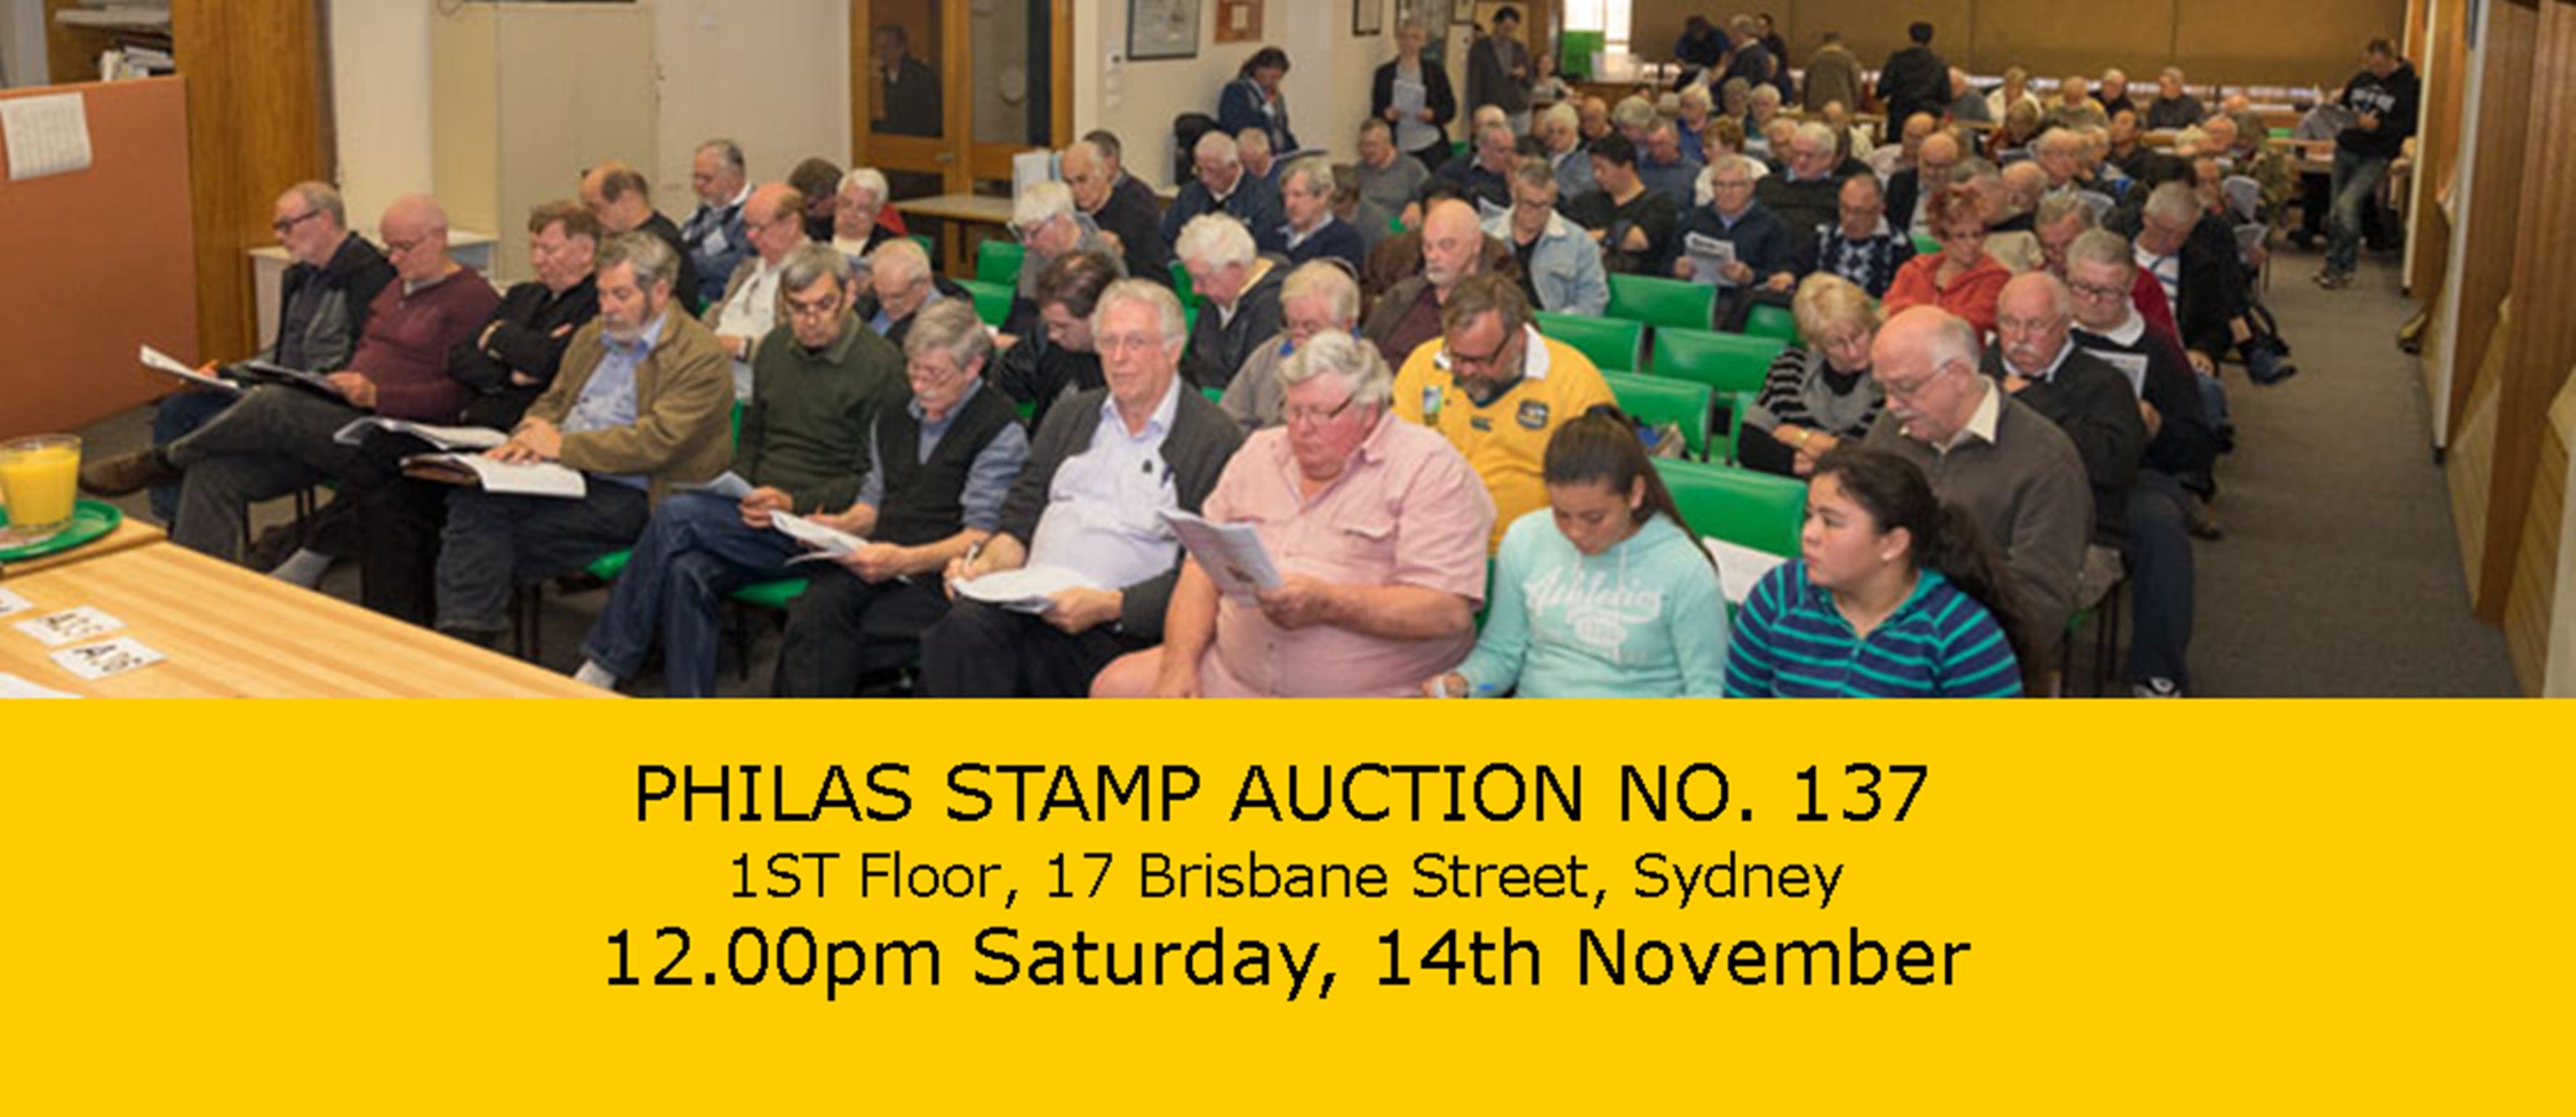 PHILAS Stamp Auction No. 137 - Restaurants Sydney